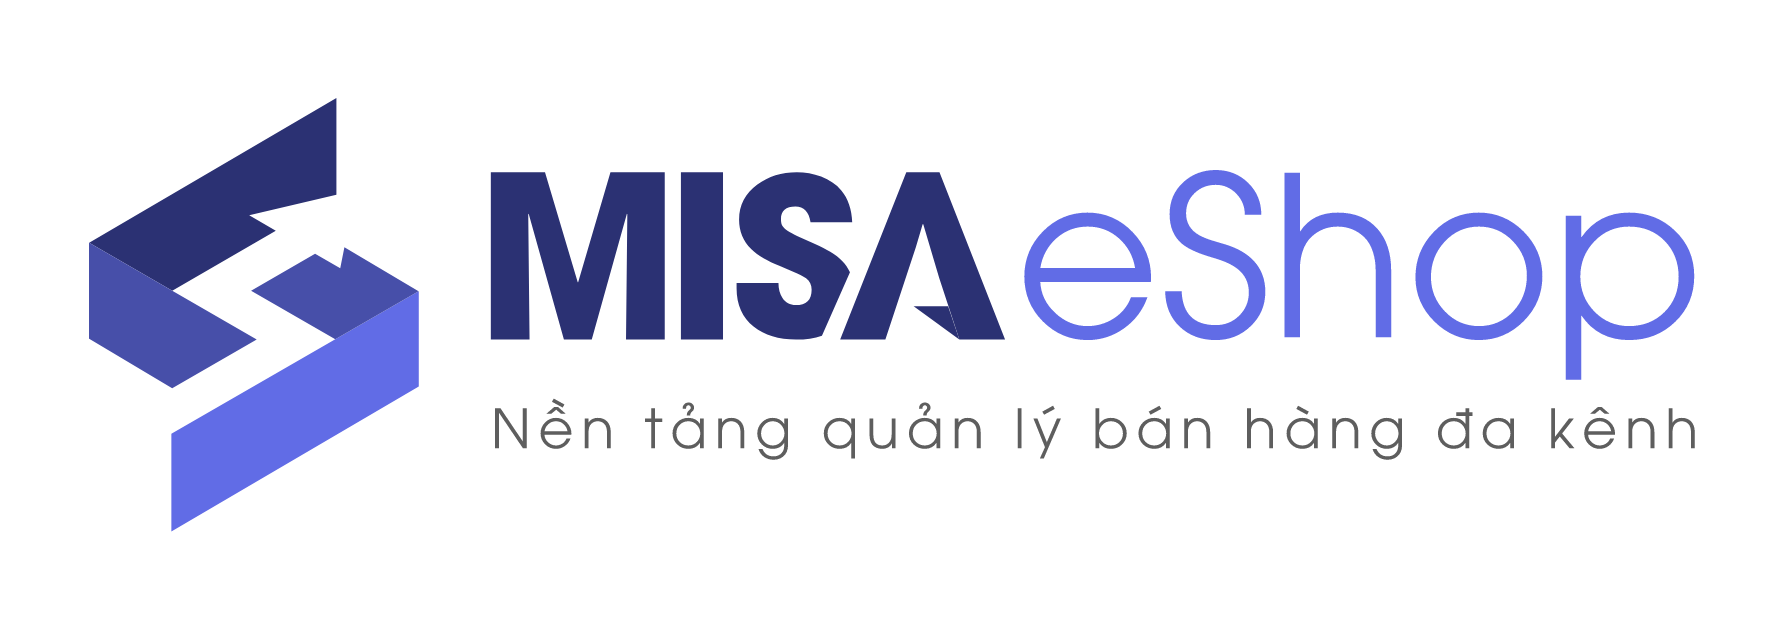 MISA eShop - Nền tảng phần mềm quản lý bán hàng đa kênh